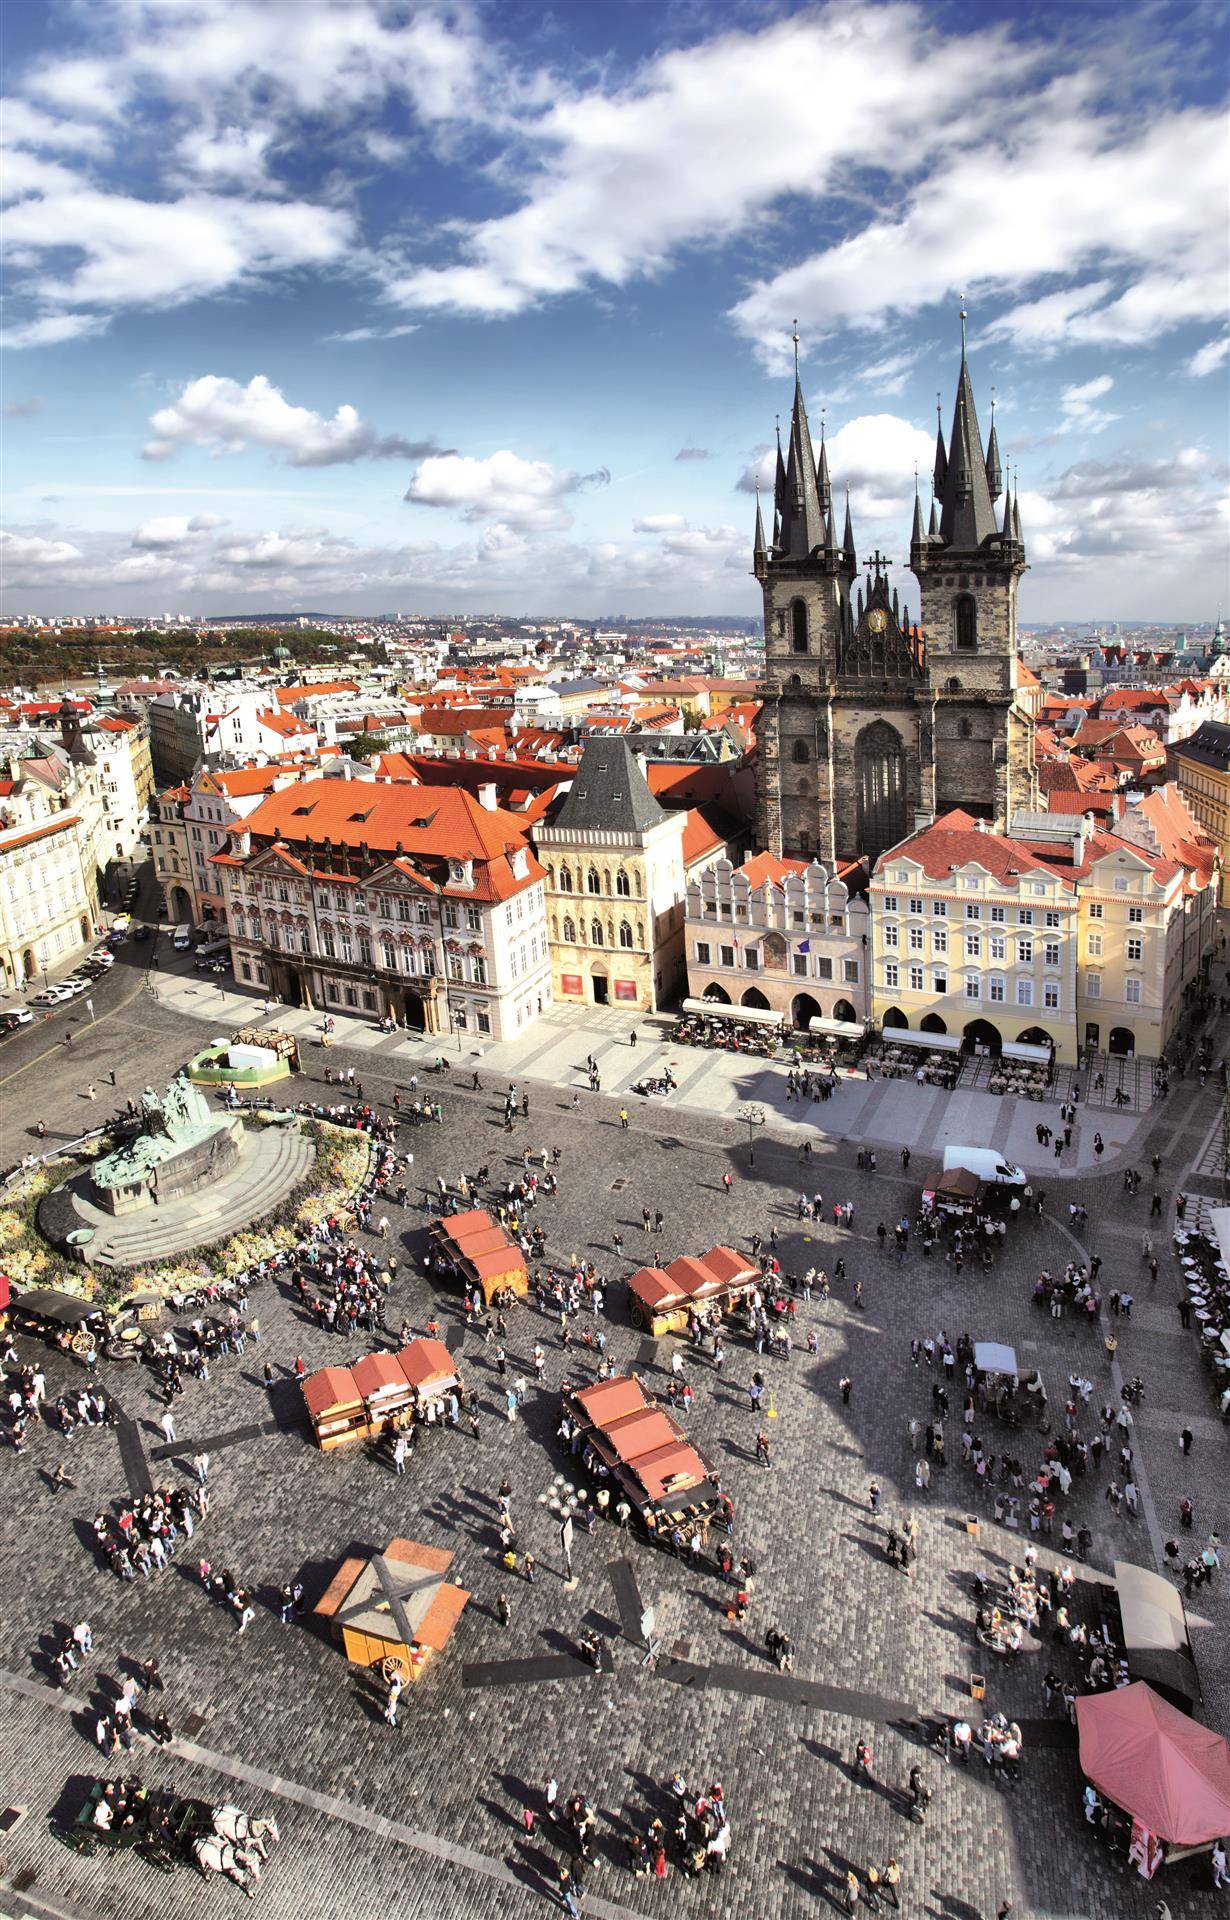 Mercatini di Natale a Praga: suggestioni di Magie e Leggende